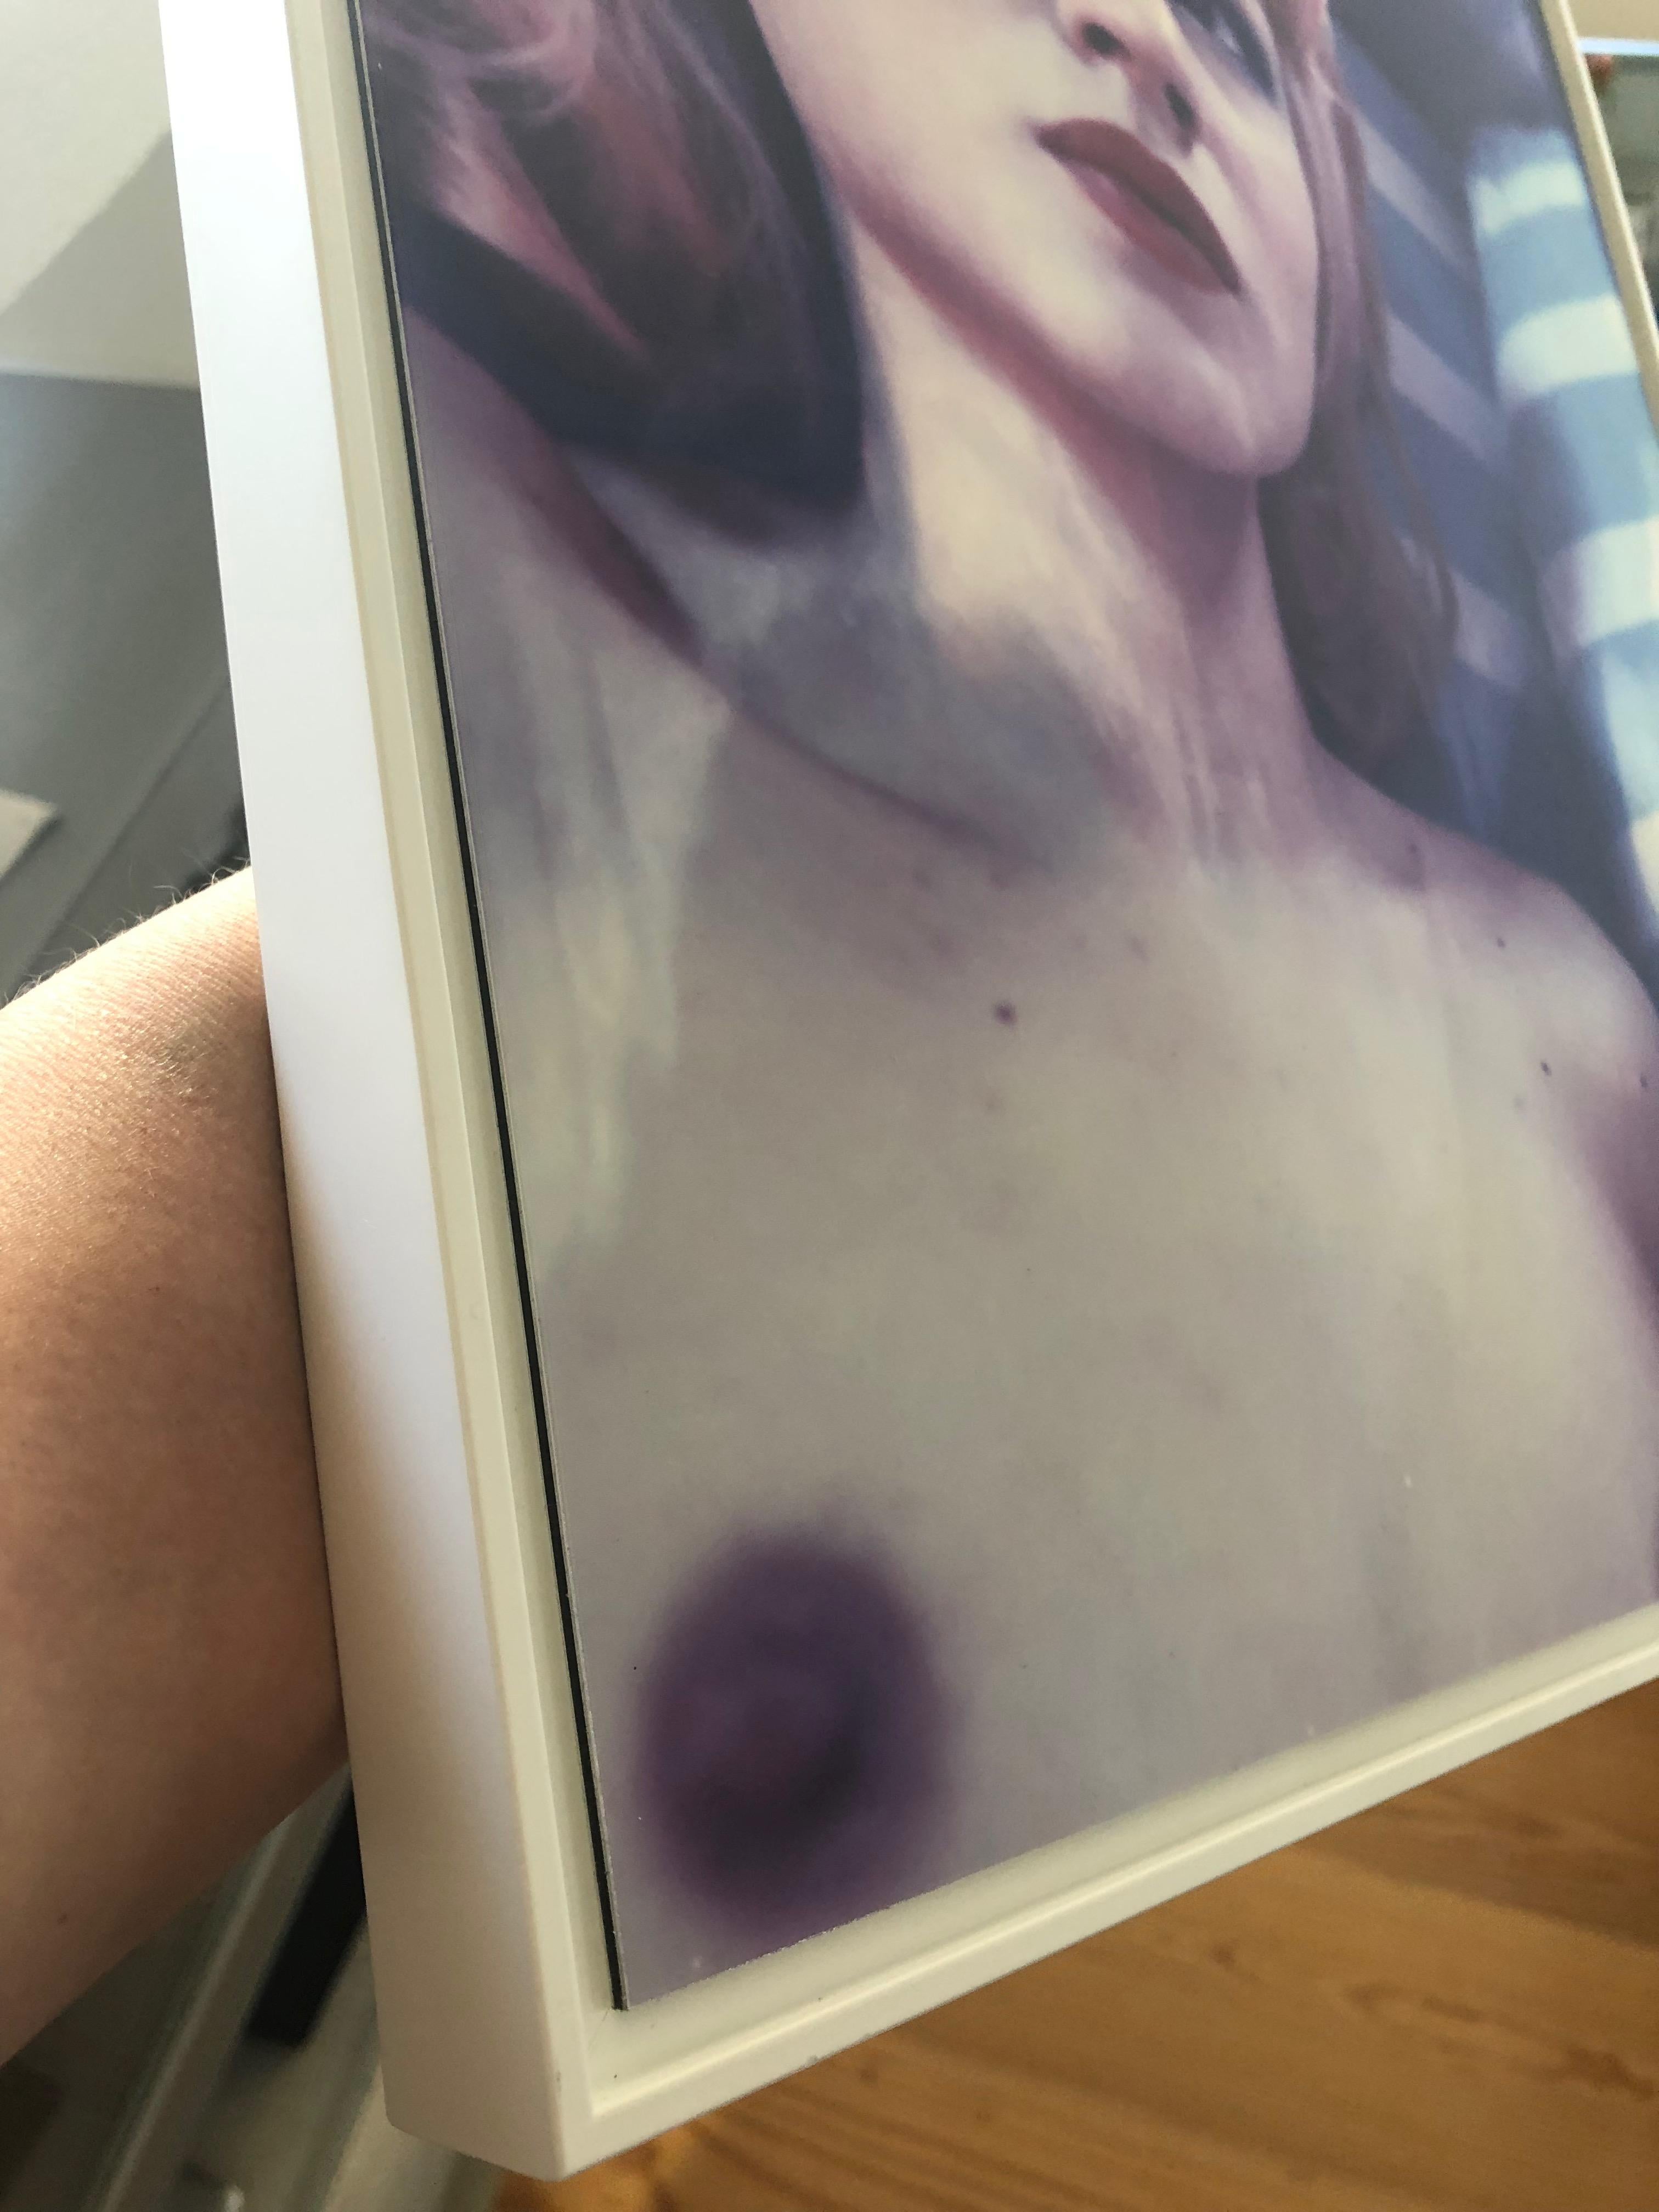 MISS ERIS #07 /2015
[Aus der Serie Les Foxy Femmes]
Kunstdruck auf Basis eines abgelaufenen Polaroidfotos
Montiert auf DILITE 2mm - 30x39x3cm - matt beschichtet
Eingebettet in einen weißen, matten Holzschattenrahmen
Handsigniert, gestempelt &